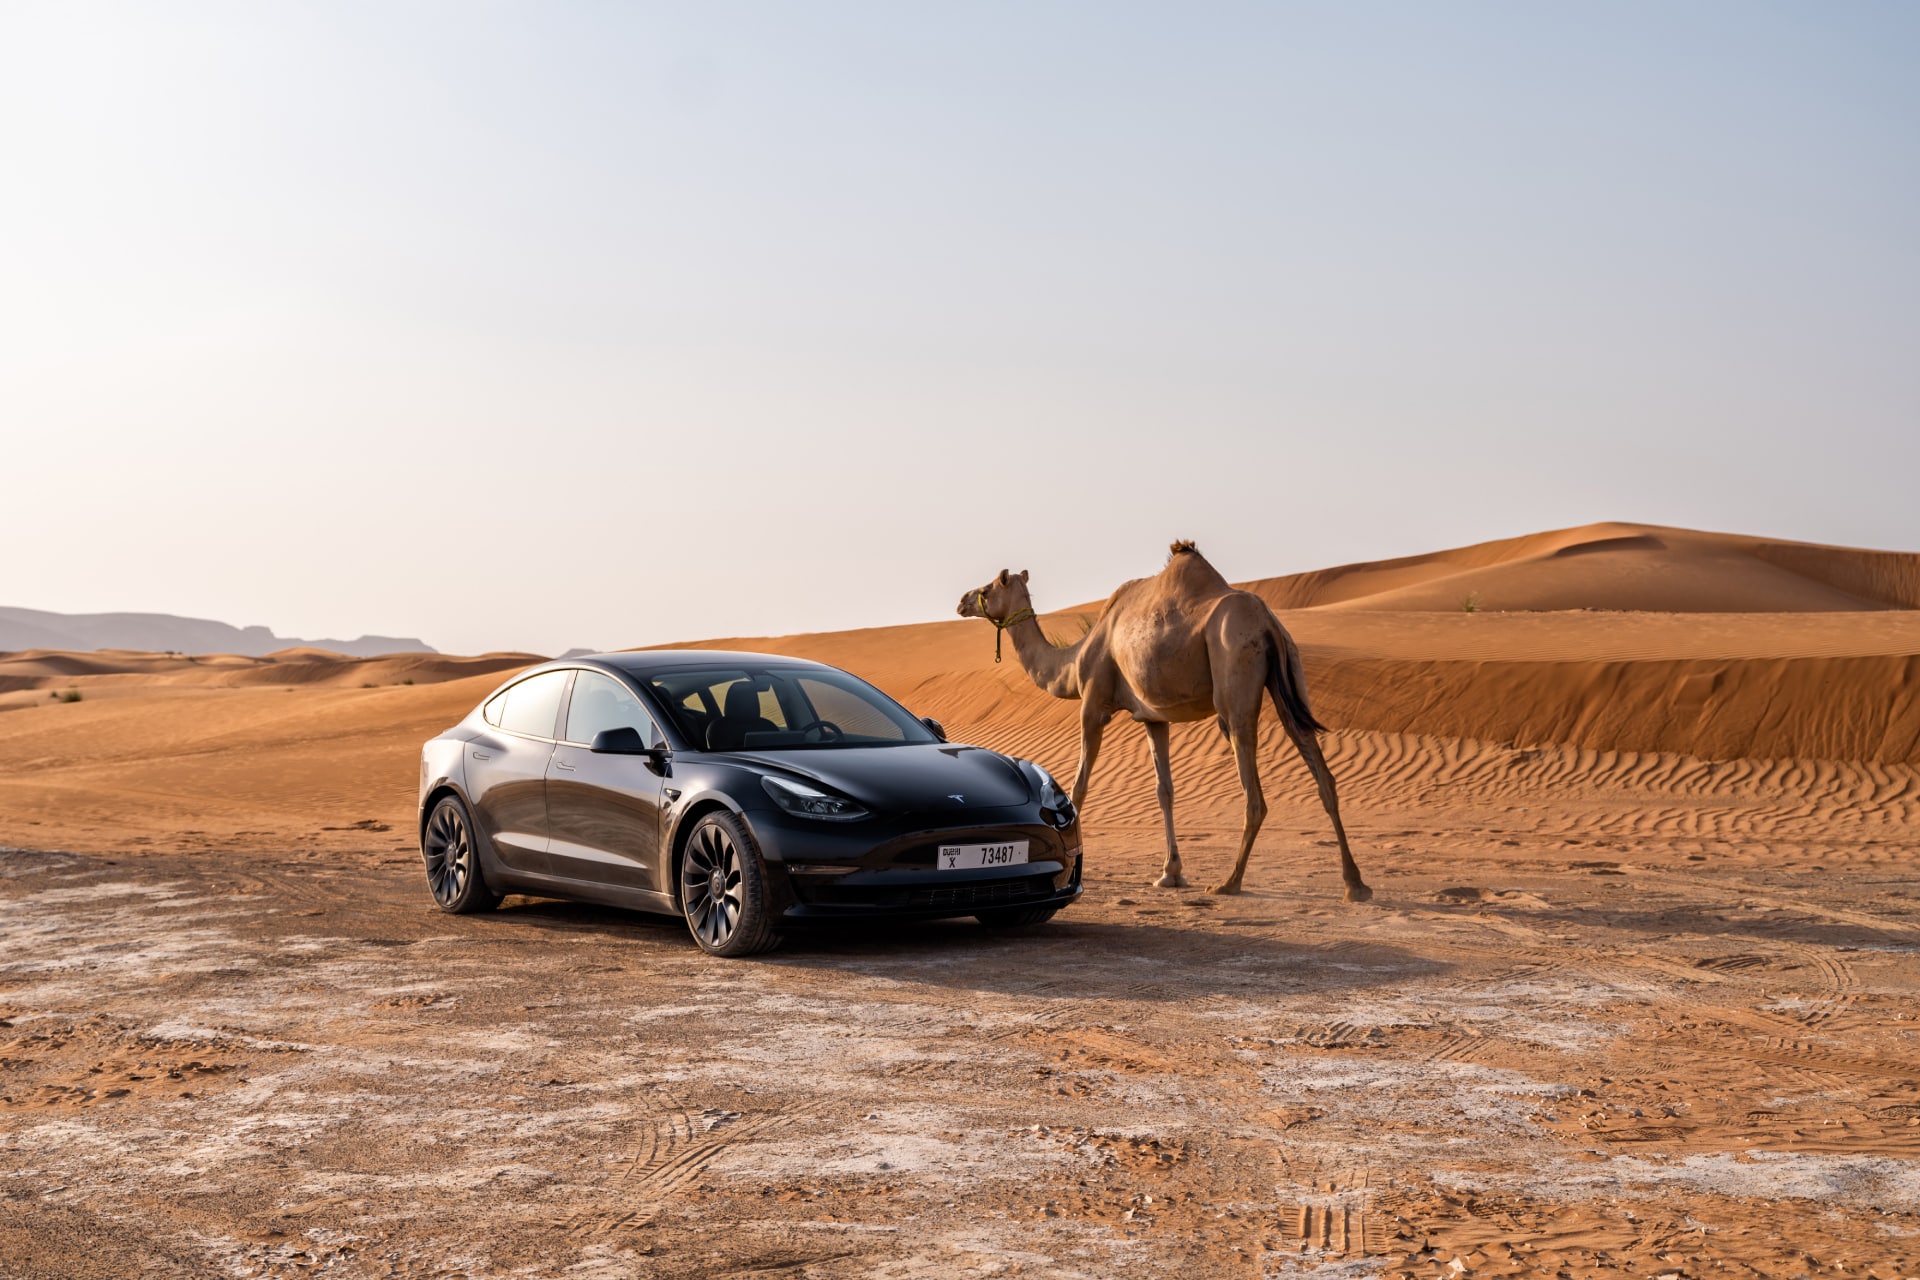 La tecnologia dietro le auto Tesla: analisi dei punti di forza e dei problemi riscontrati